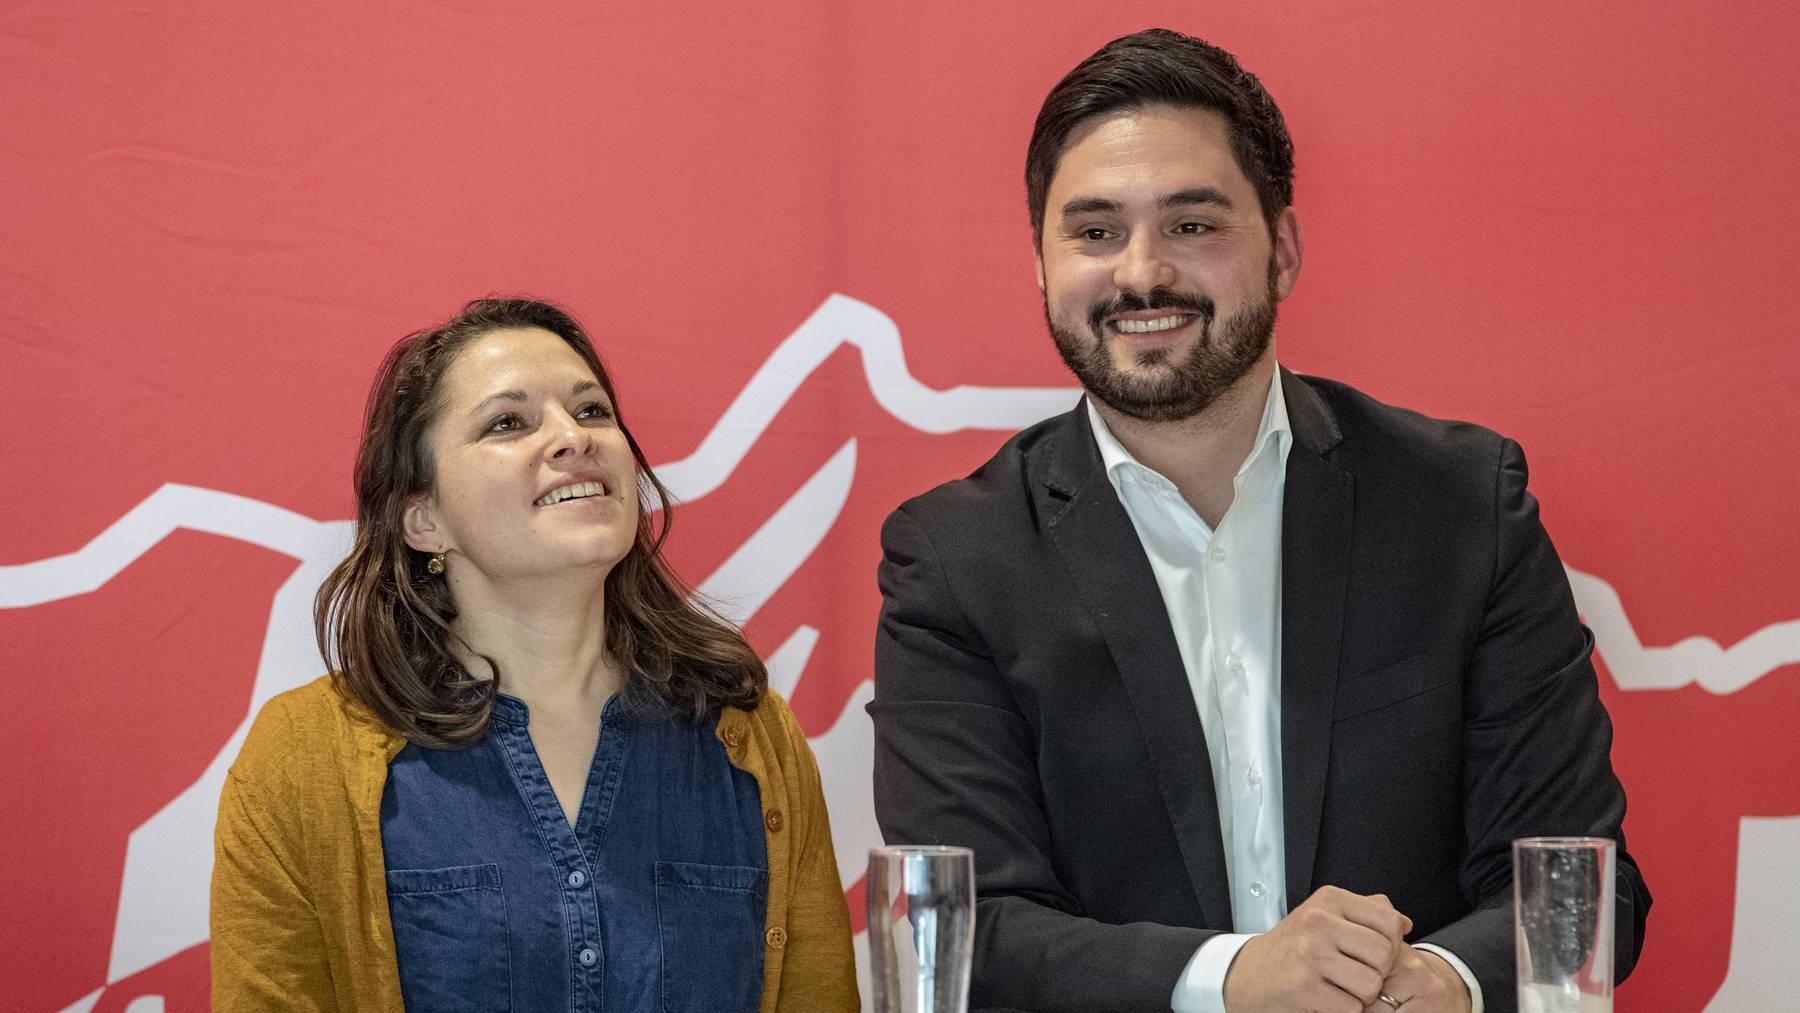 Mattea Meyer (l.) und Cédric Wermuth wollen die Schweizer Sozialdemokratie führen..